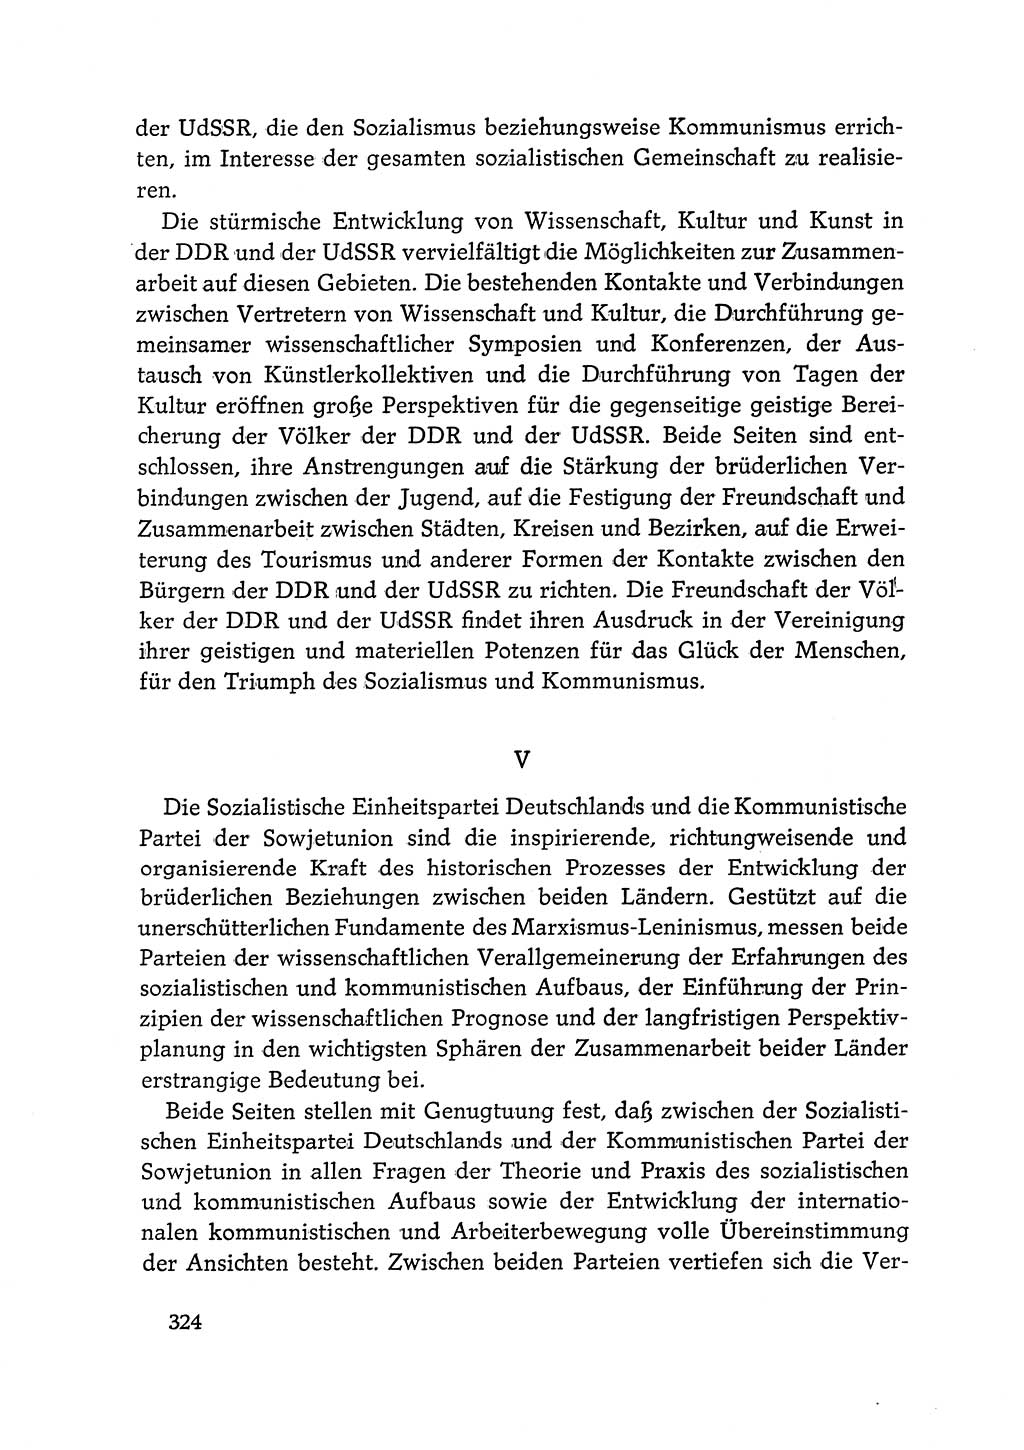 Dokumente der Sozialistischen Einheitspartei Deutschlands (SED) [Deutsche Demokratische Republik (DDR)] 1968-1969, Seite 324 (Dok. SED DDR 1968-1969, S. 324)